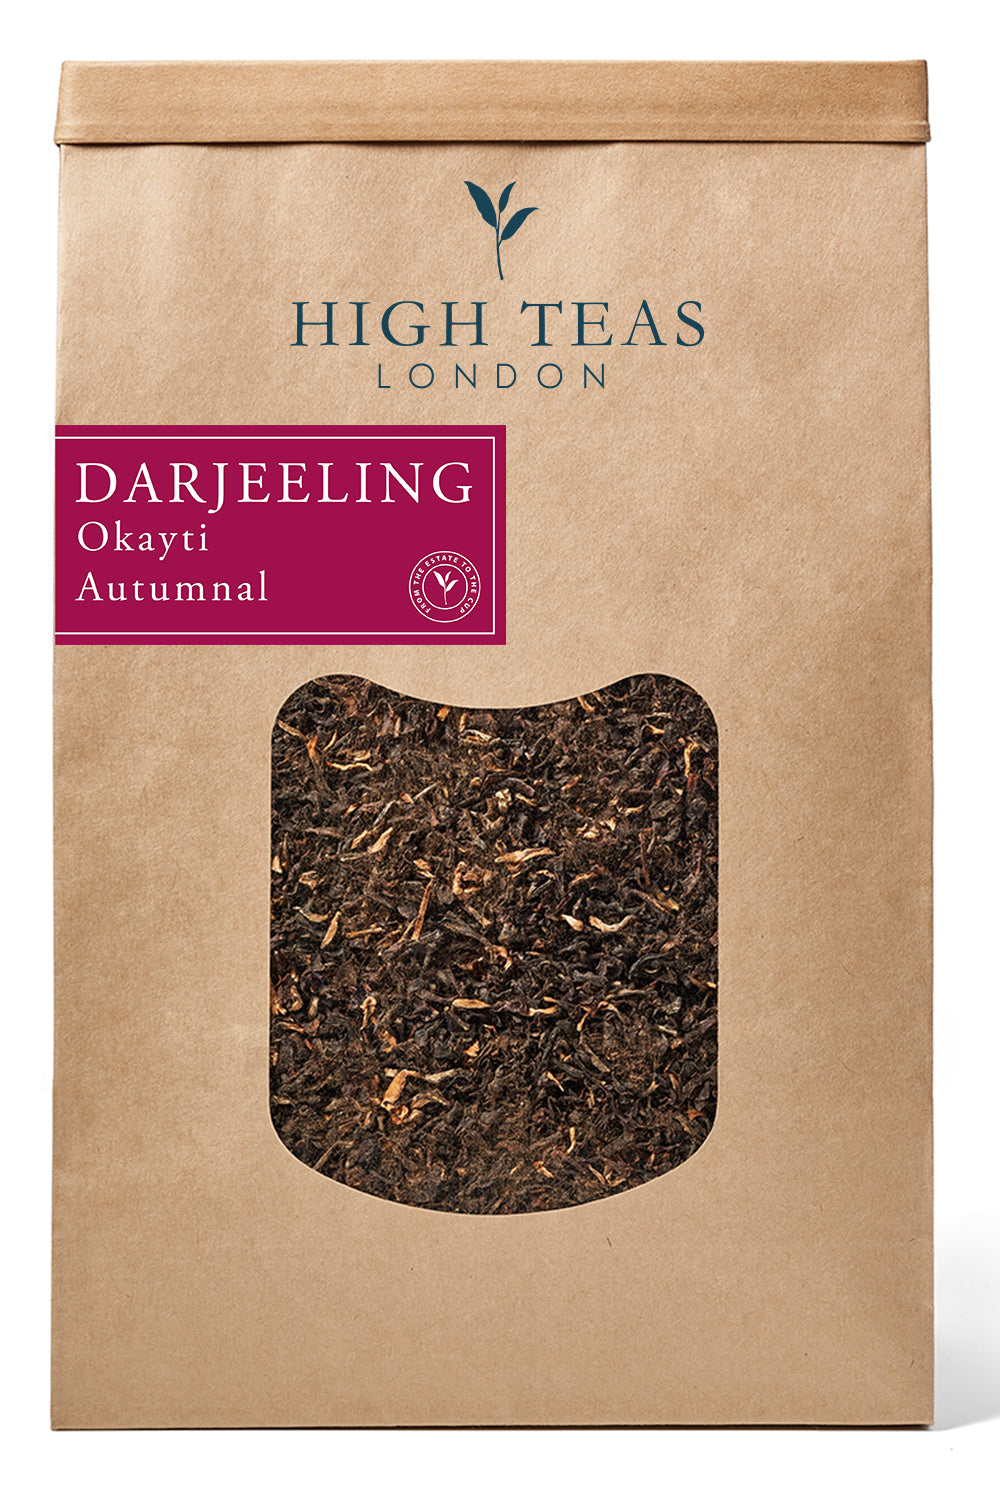 Darjeeling - Okayti Autumnal 2019 FTGFOP1-500g-Loose Leaf Tea-High Teas